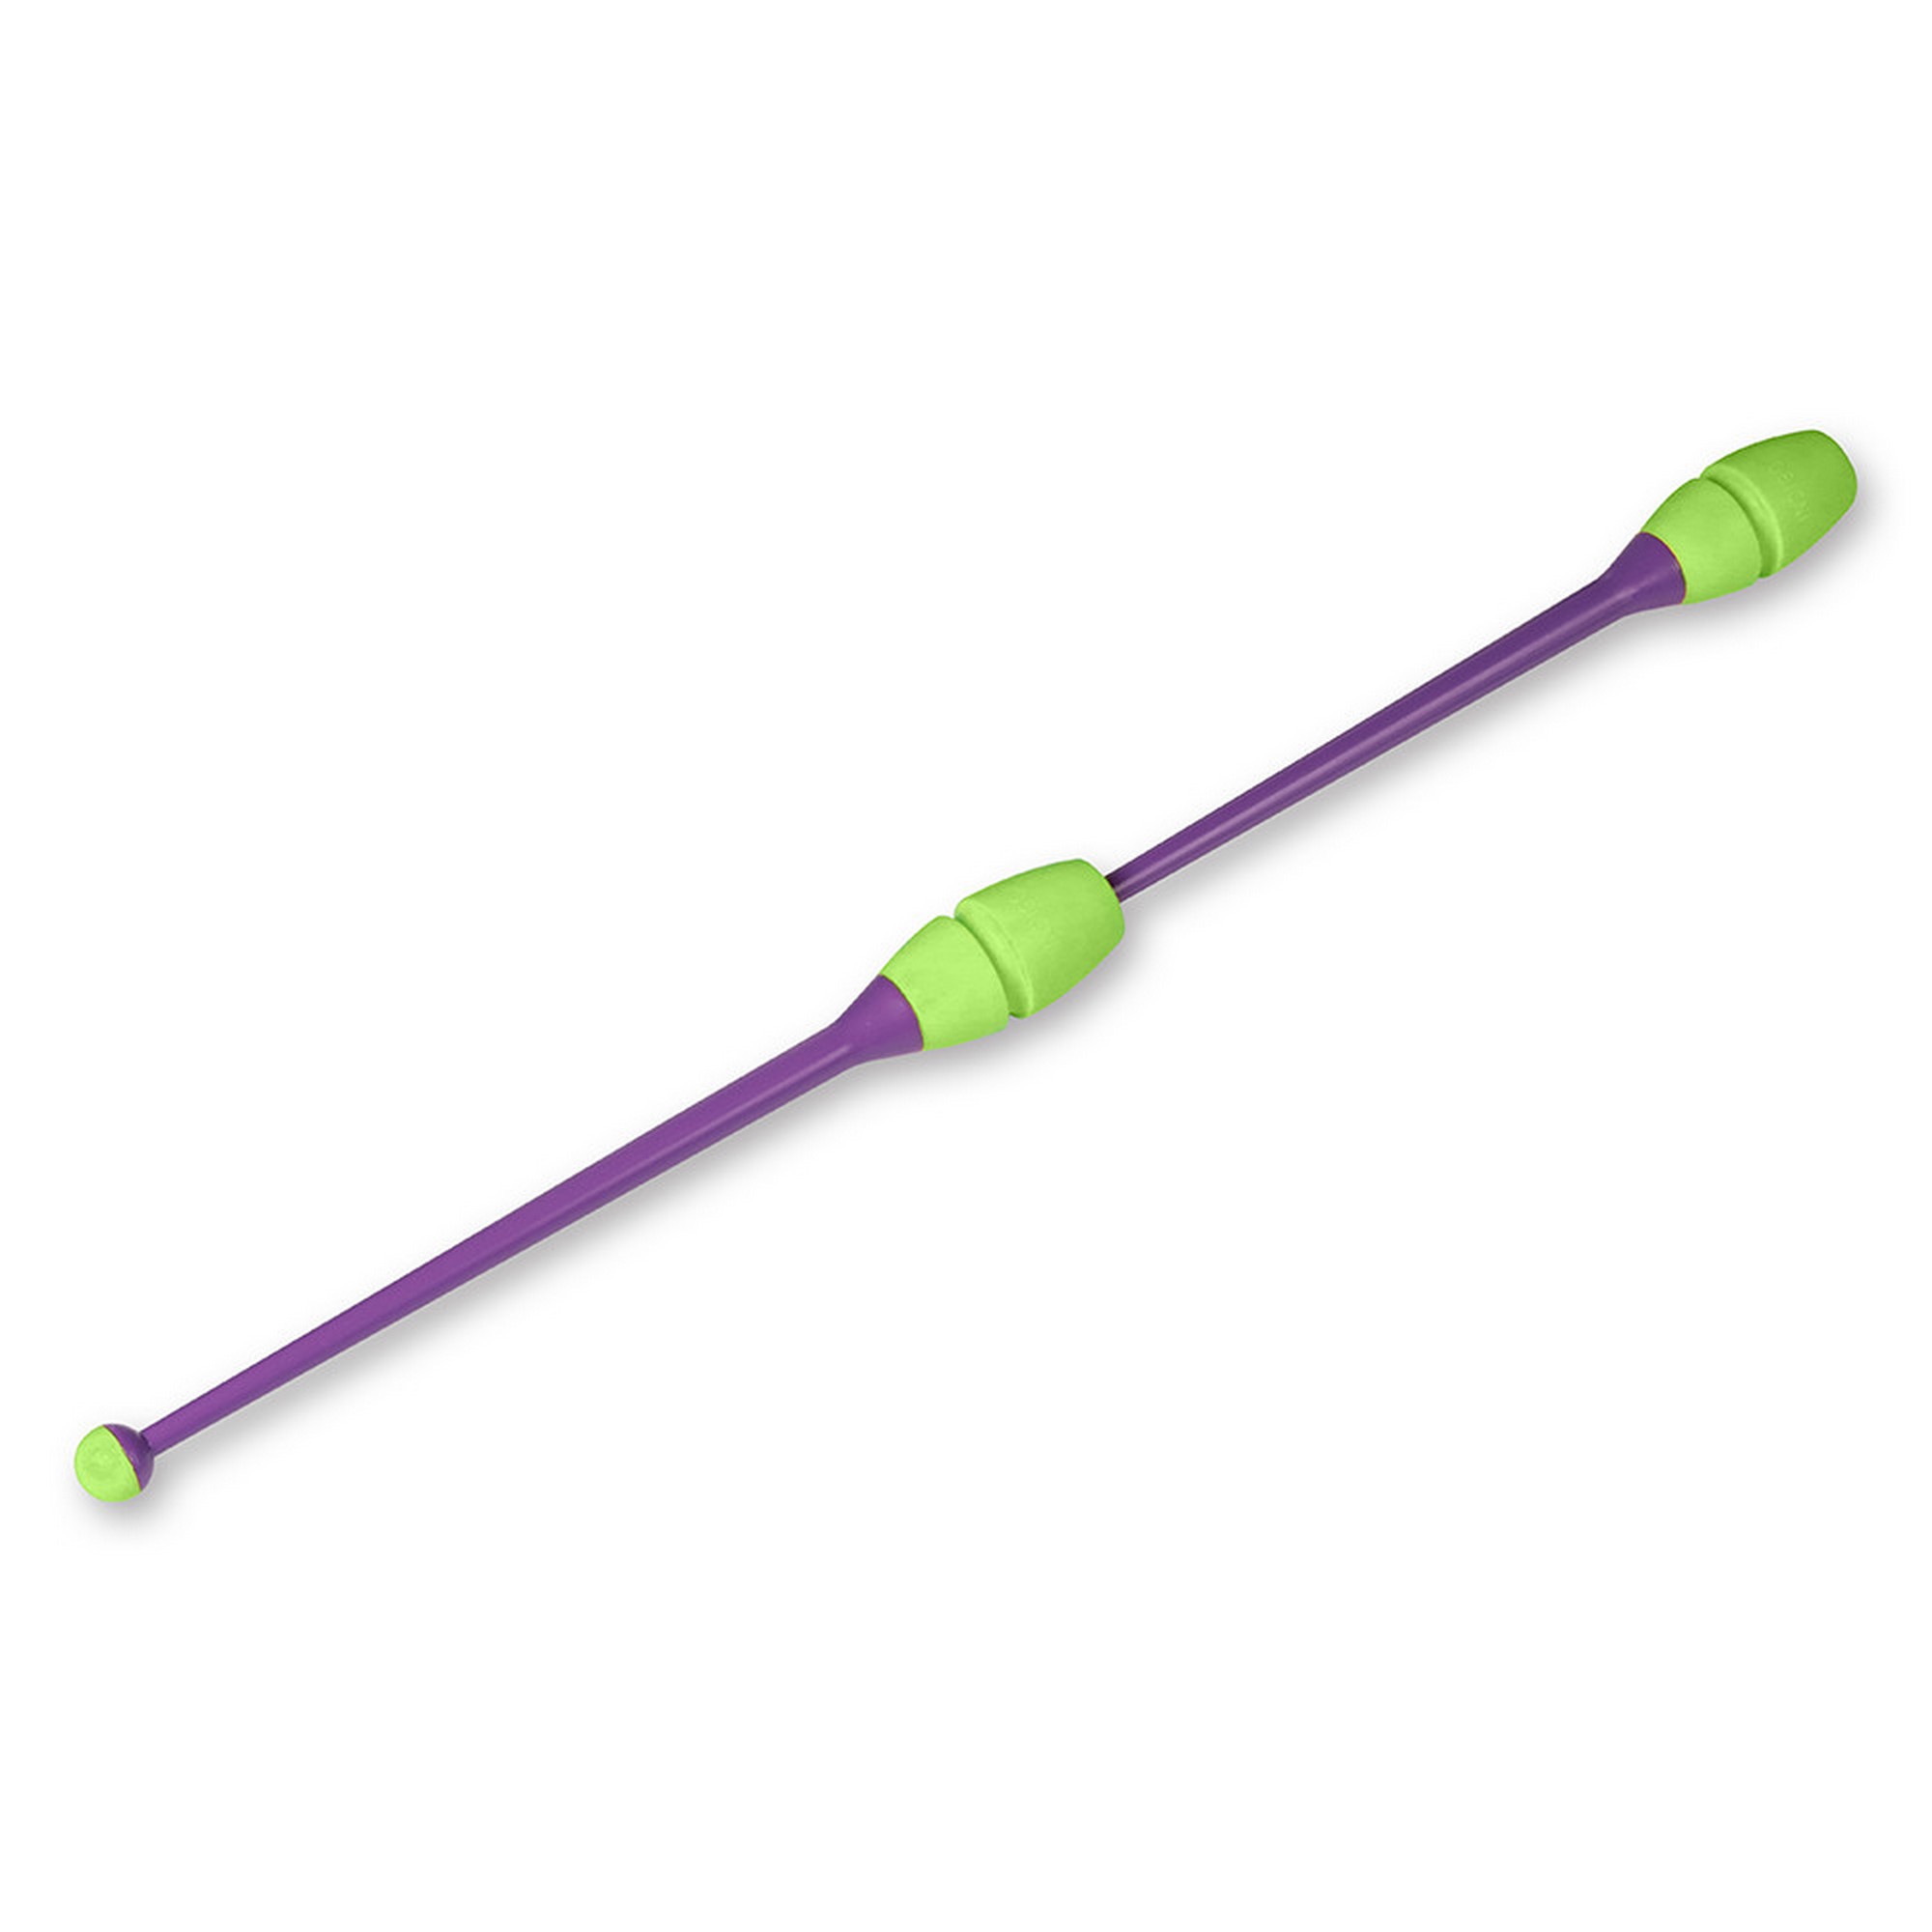 Булавы для художественной гимнастики Indigo 45 см, пластик, каучук, 2шт IN019-VLG фиолетовый-салатовый 2000_2000